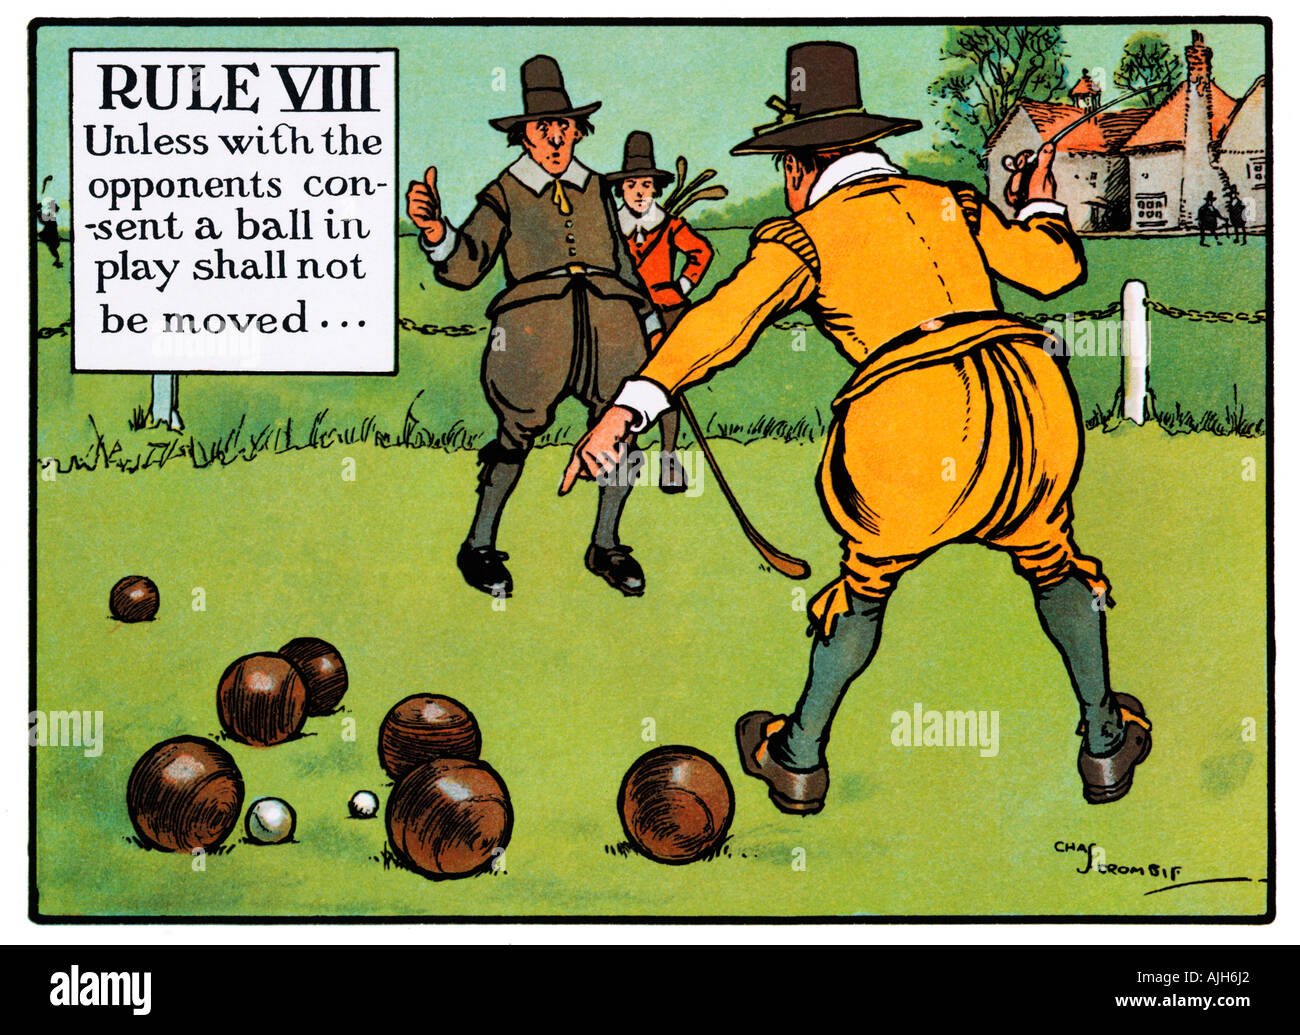 Chas Crombies Regole del Golf VIII del 1905 Perrier serie se non con il consenso degli avversari una palla in gioco non deve essere spostata Foto Stock